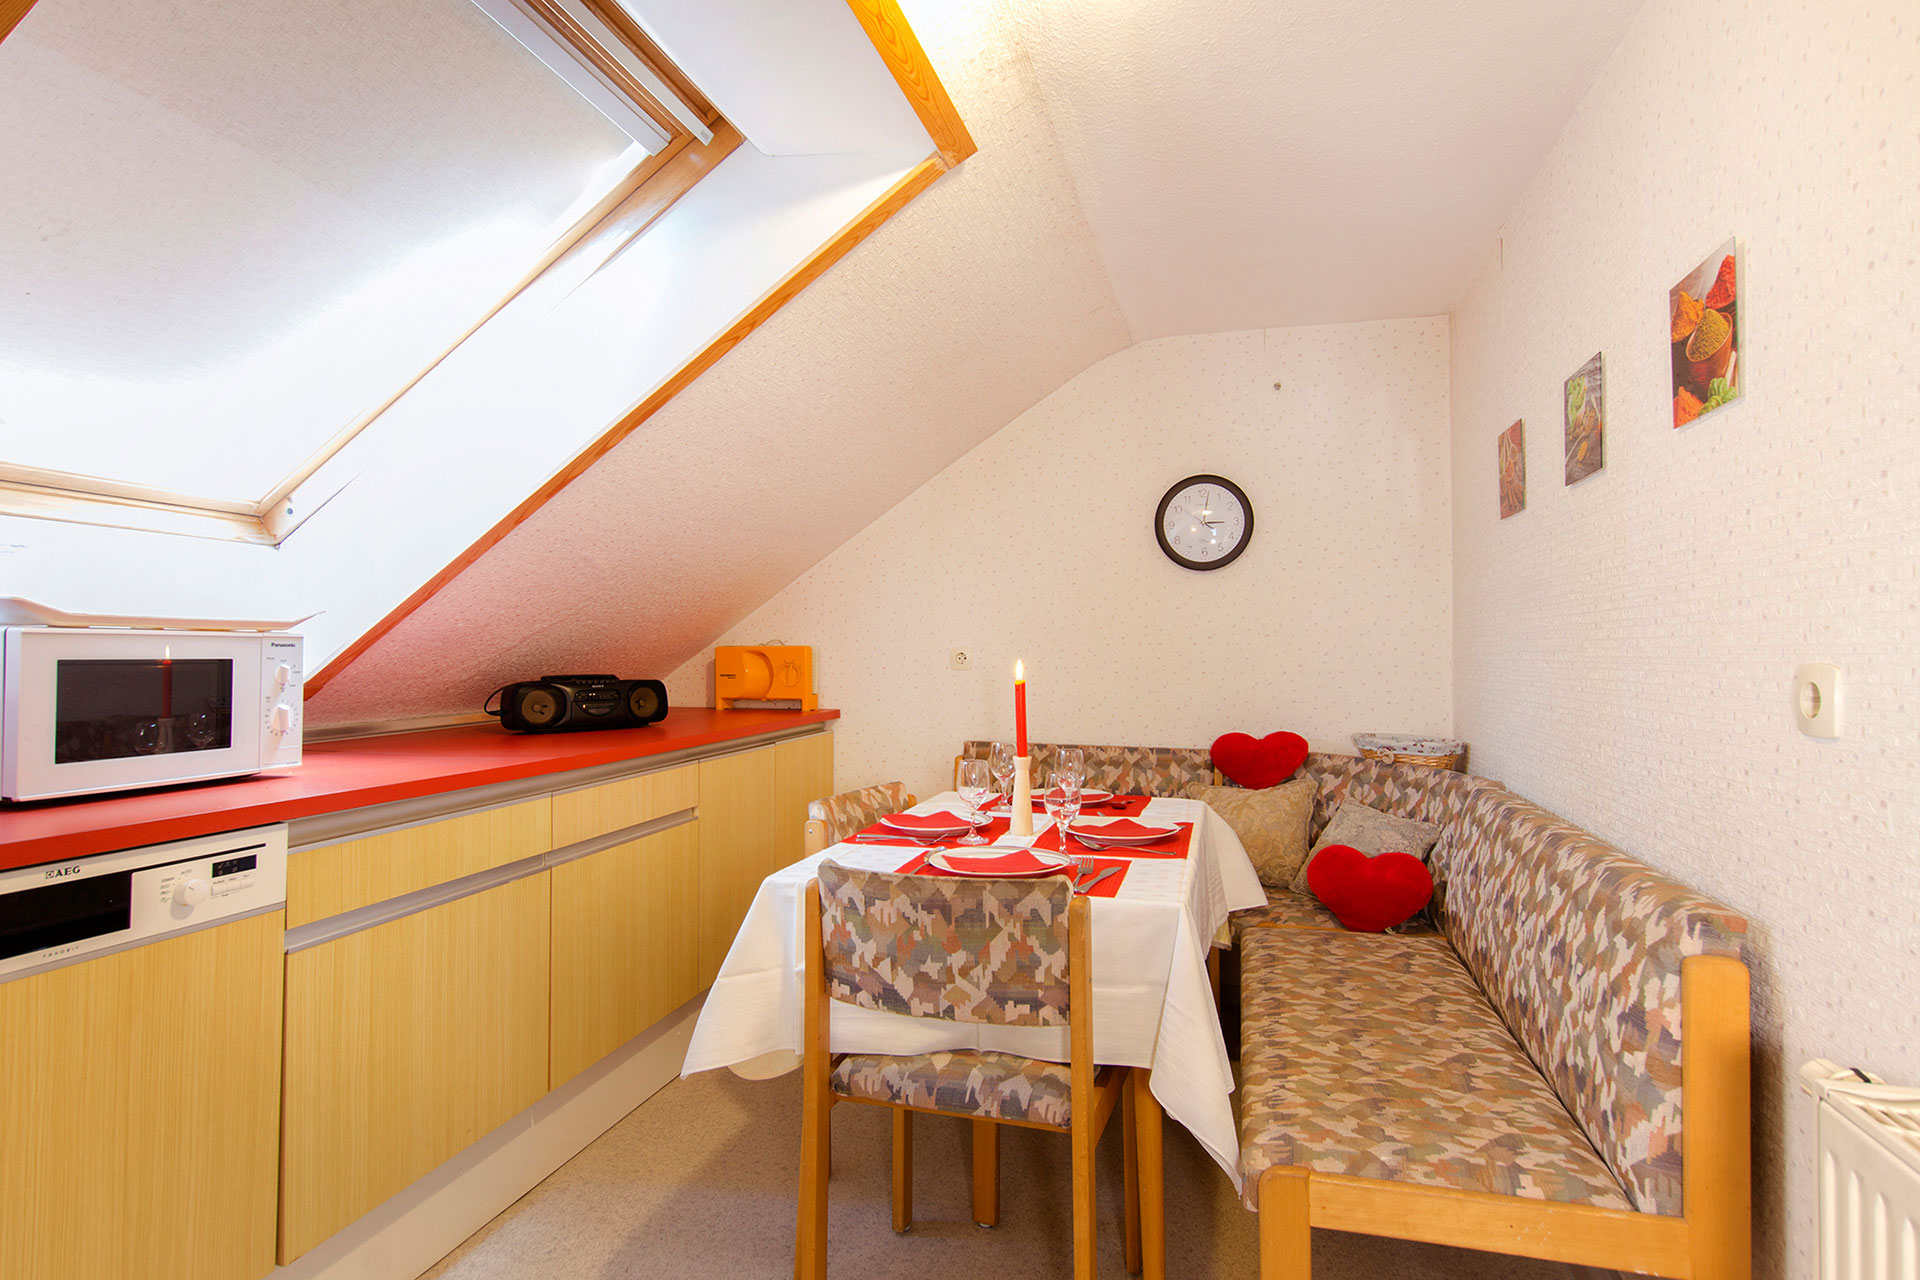 foto ferienwohnung nachher küche und Essbereich in Dachschräge hell mit gedecktem tisch